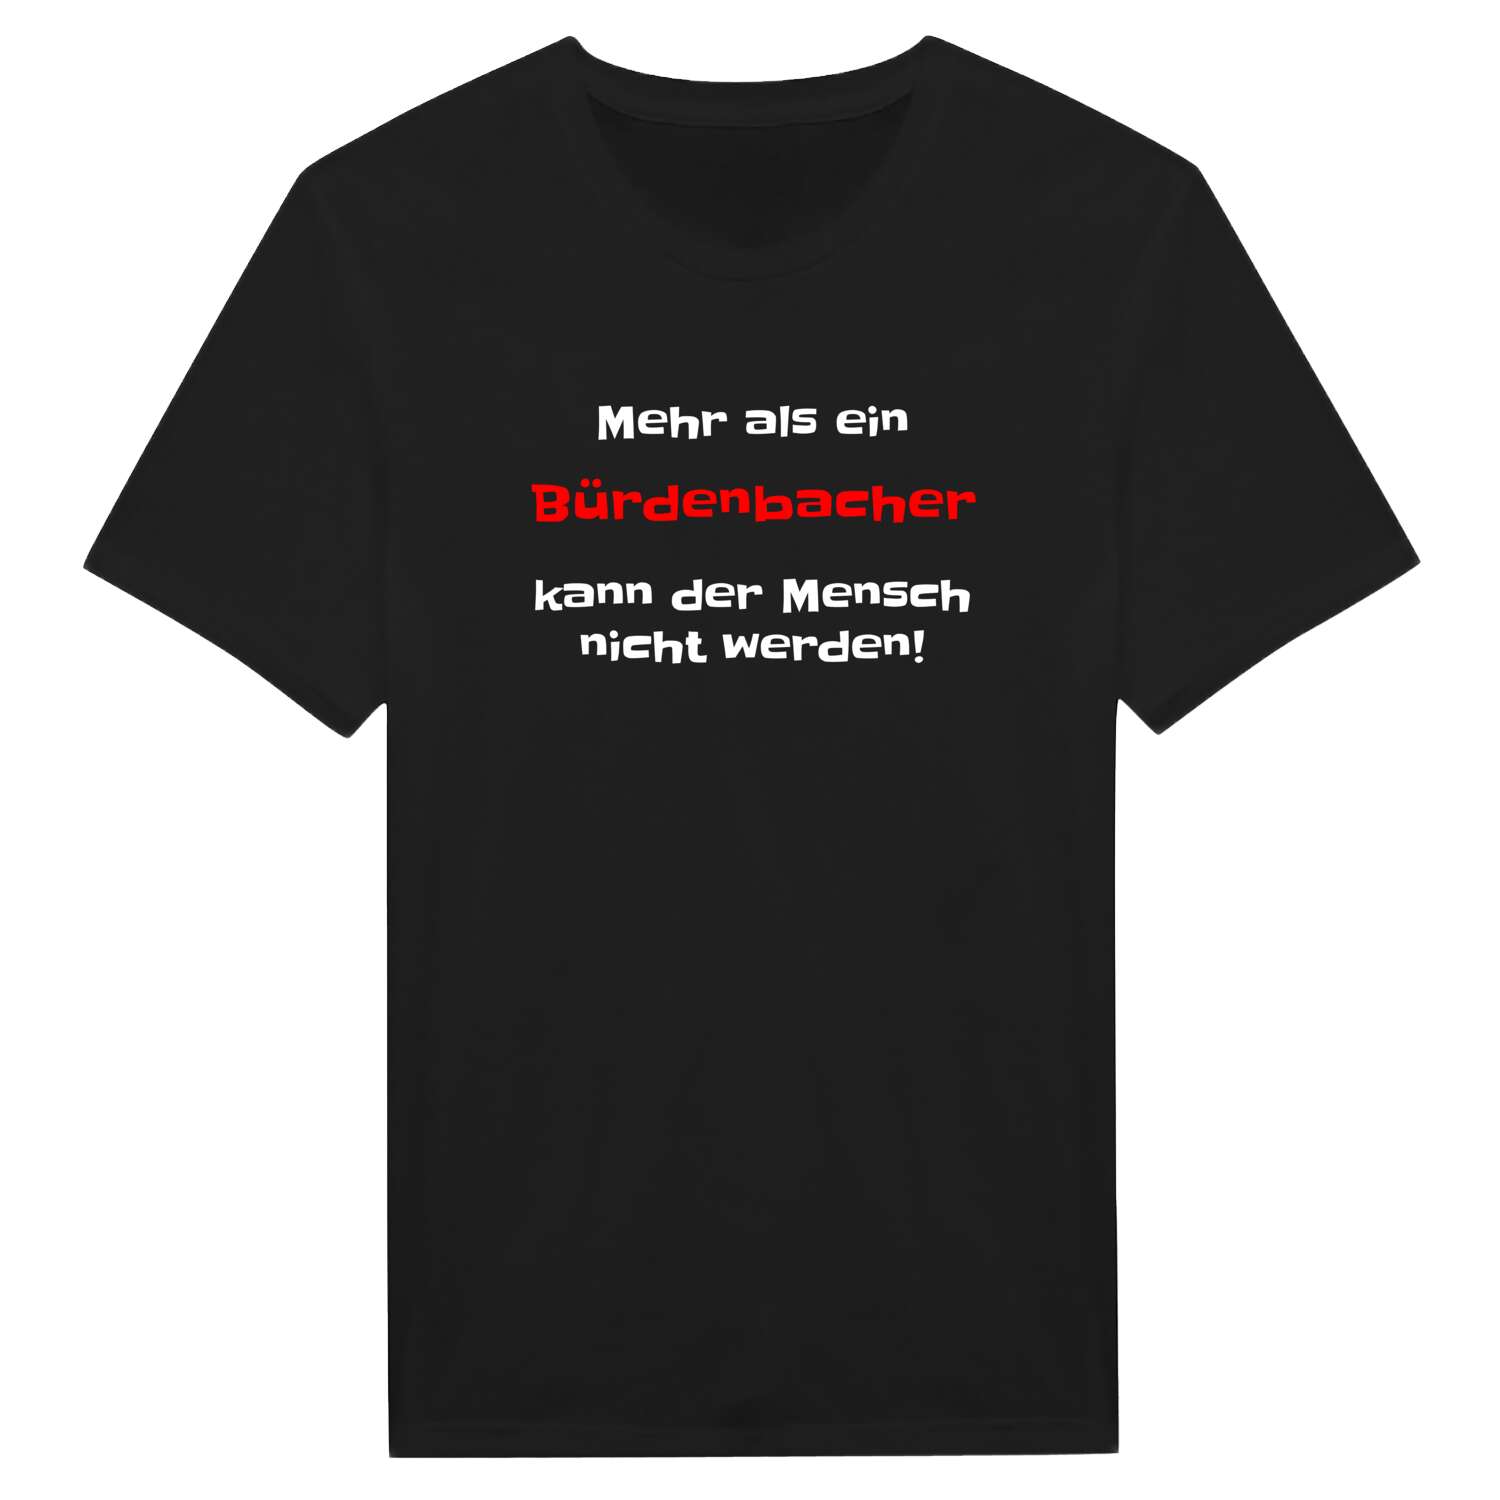 Bürdenbach T-Shirt »Mehr als ein«